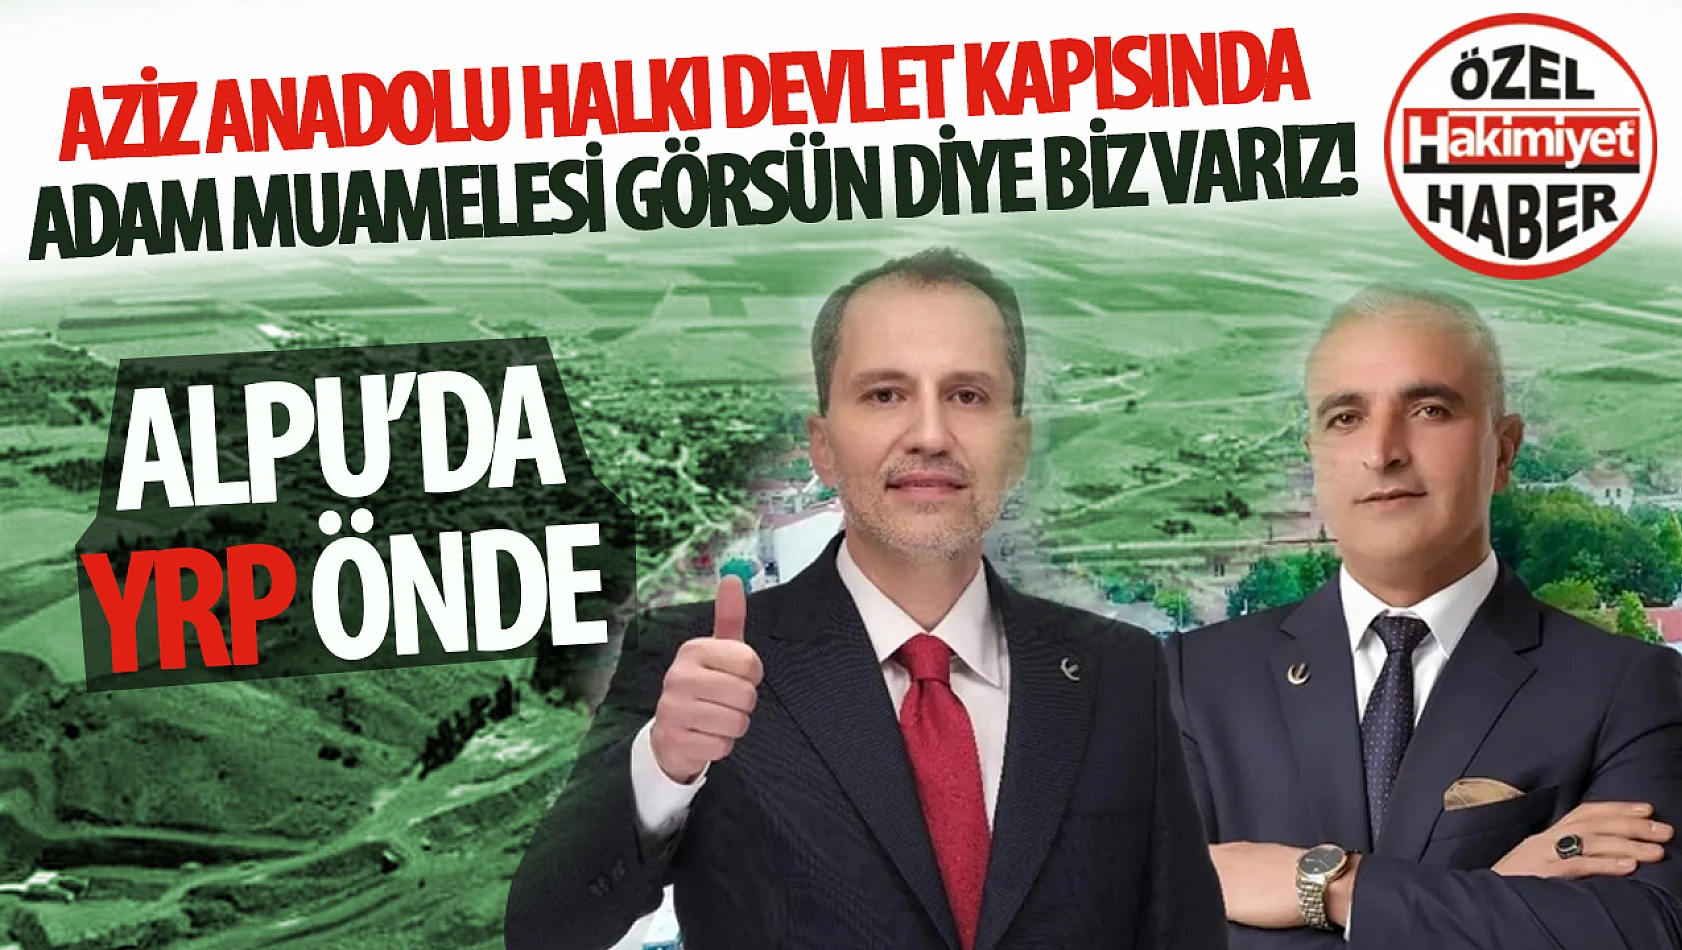 YRP Alpu Belediye Başkan Adayı Hikmet Özkan: 'Aziz Anadolu Halkı Devlet Kapısında Adam Muamelesi Görsün Diye Biz Varız!'